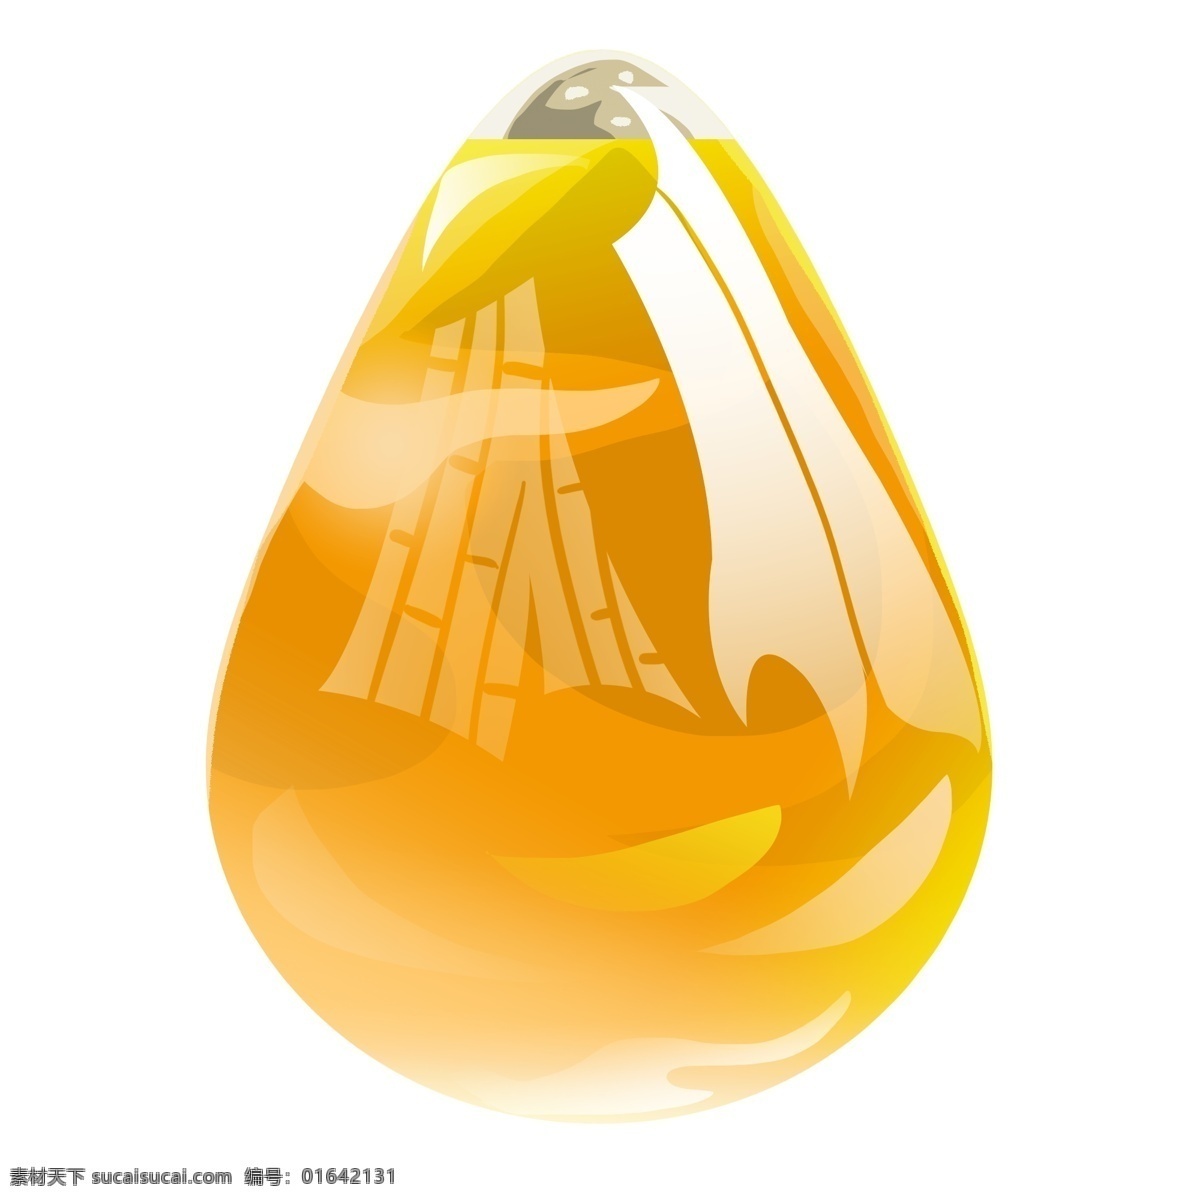 漂亮 玻璃 装饰品 插画 水滴型玻璃 光泽玻璃 装饰 装饰玻璃插画 玻璃材质 黄色滴水装饰